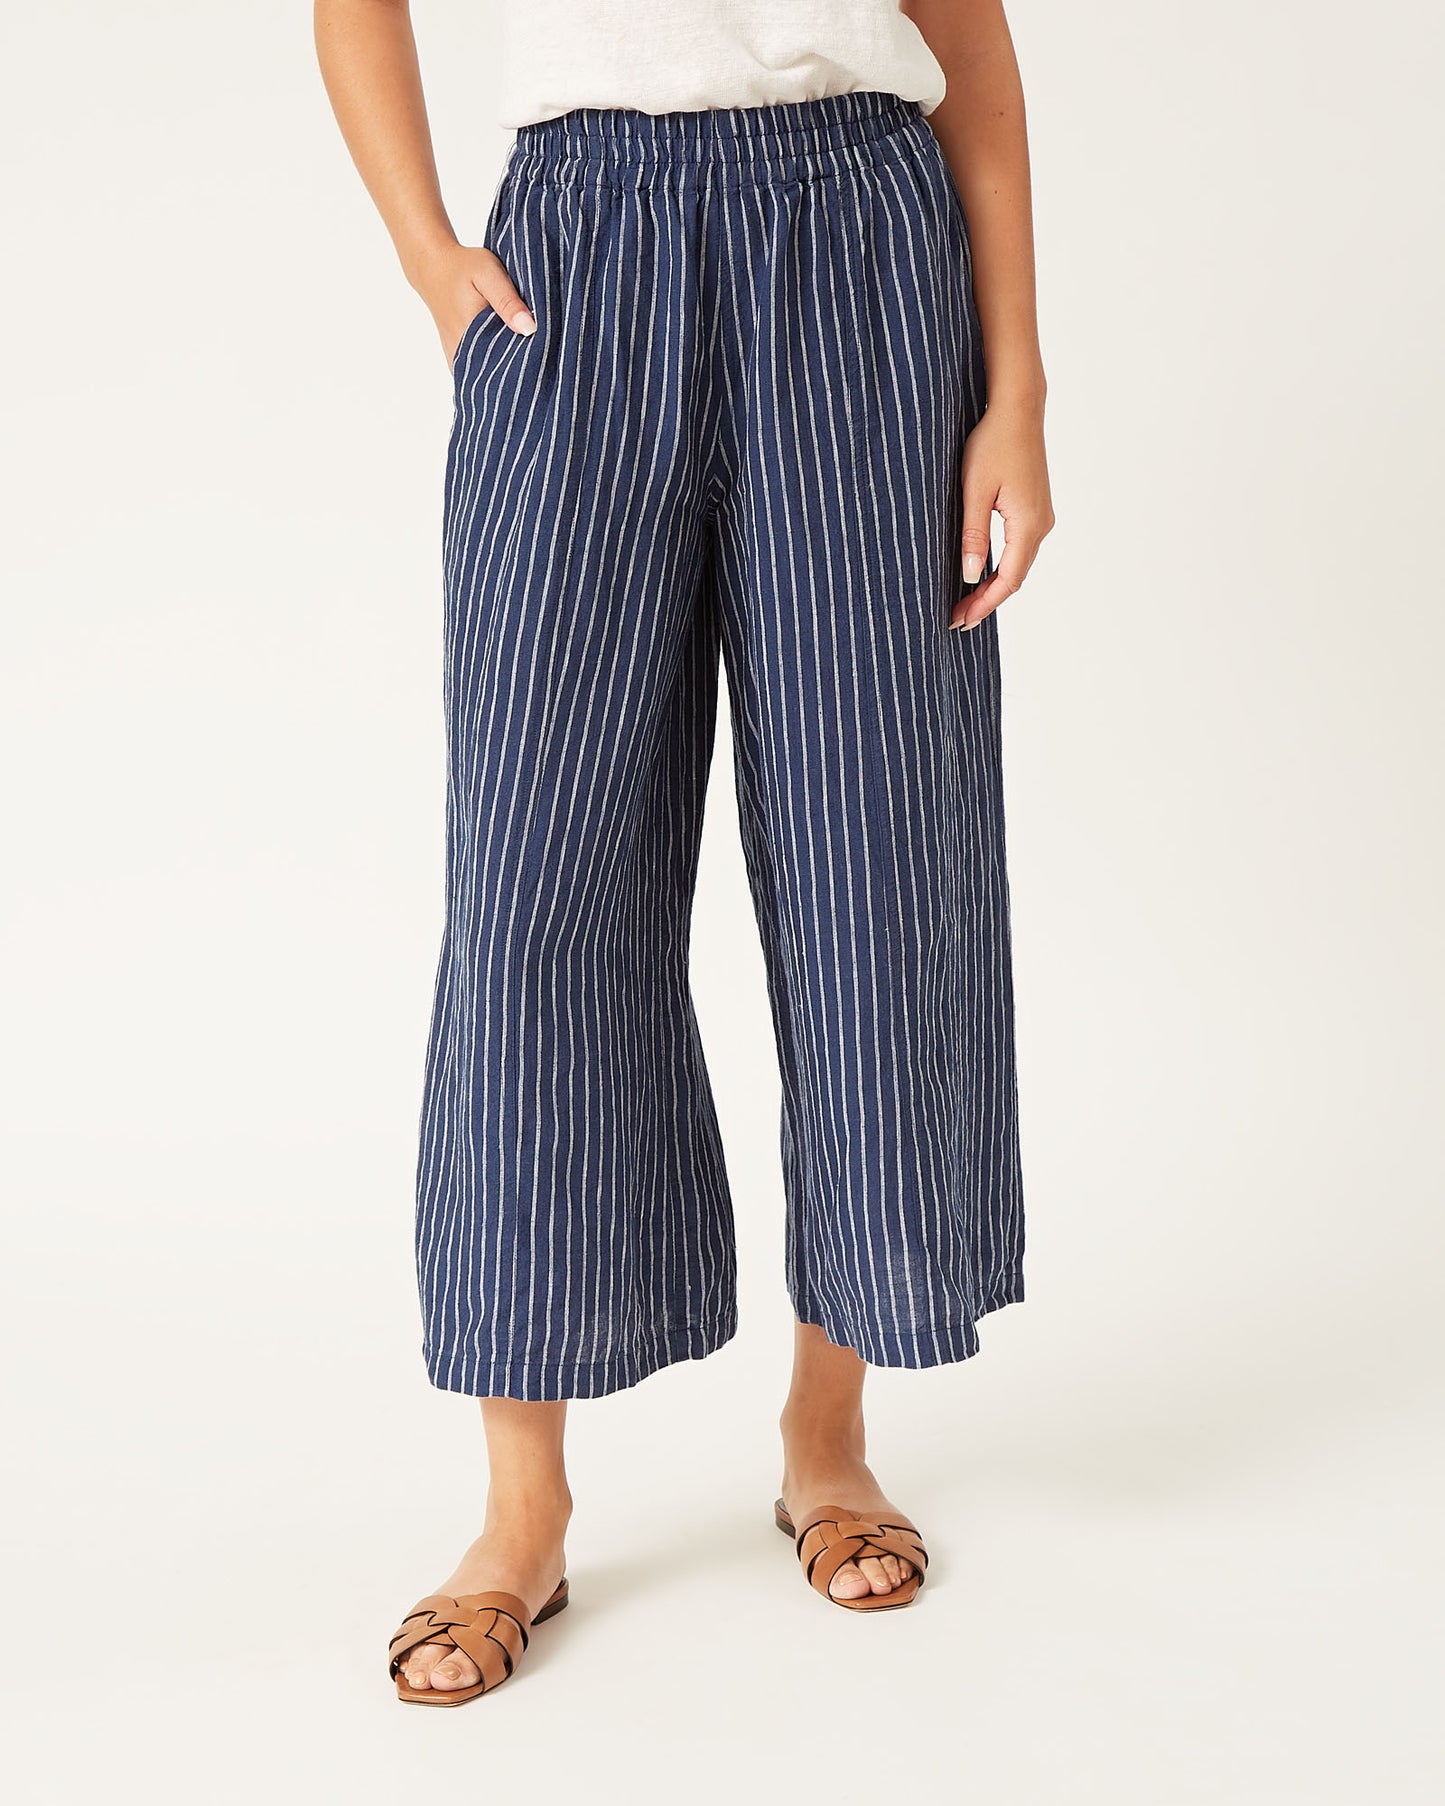 DOMI pants in striped linen